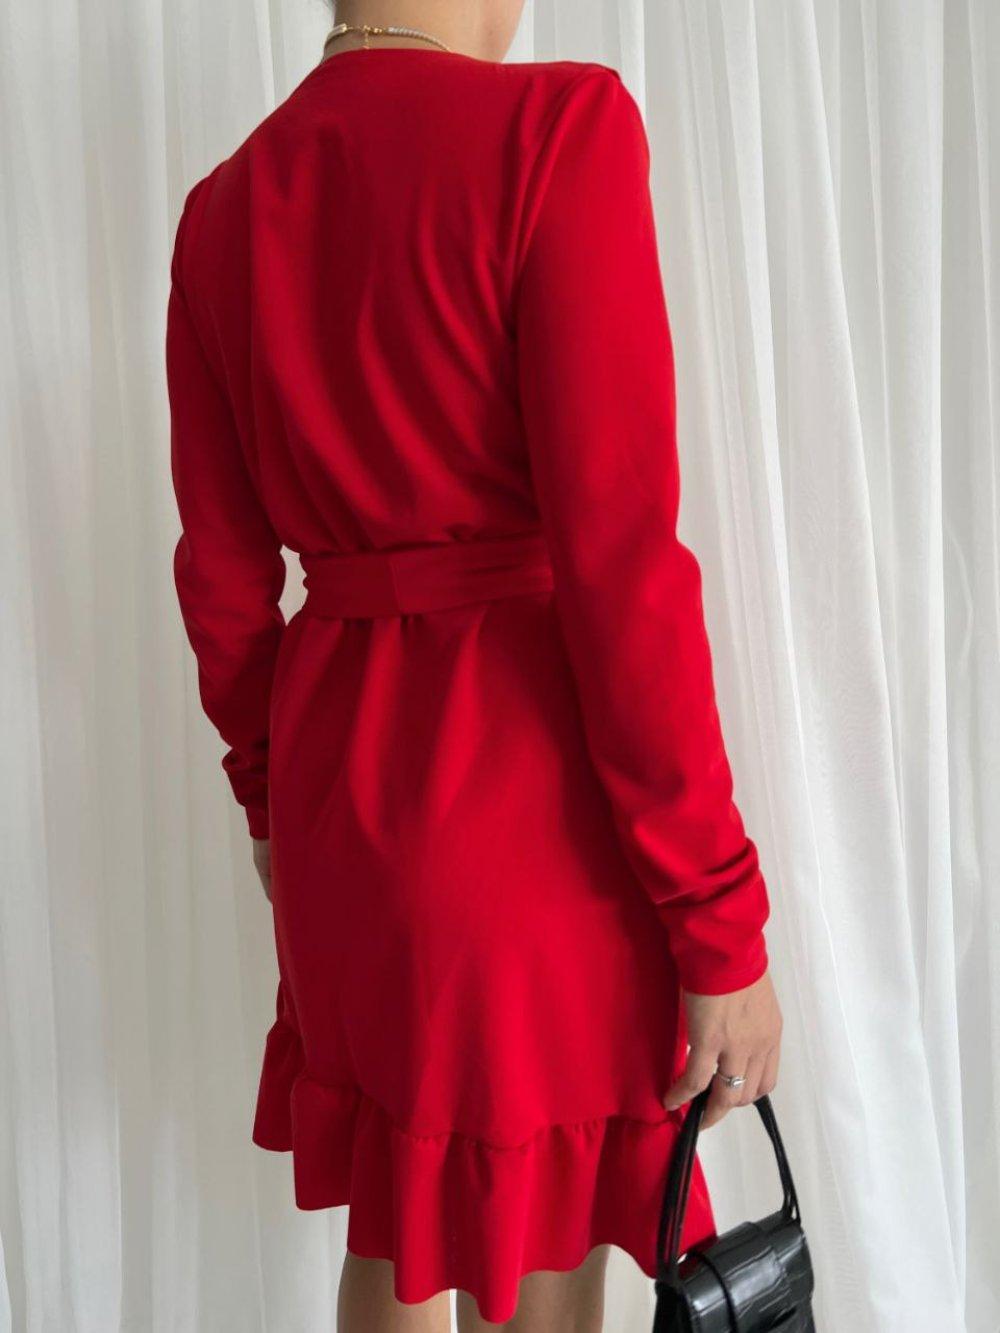 Amore Fırfır Yaka Kuşaklı Elbise 581842 B-10 Kırmızı